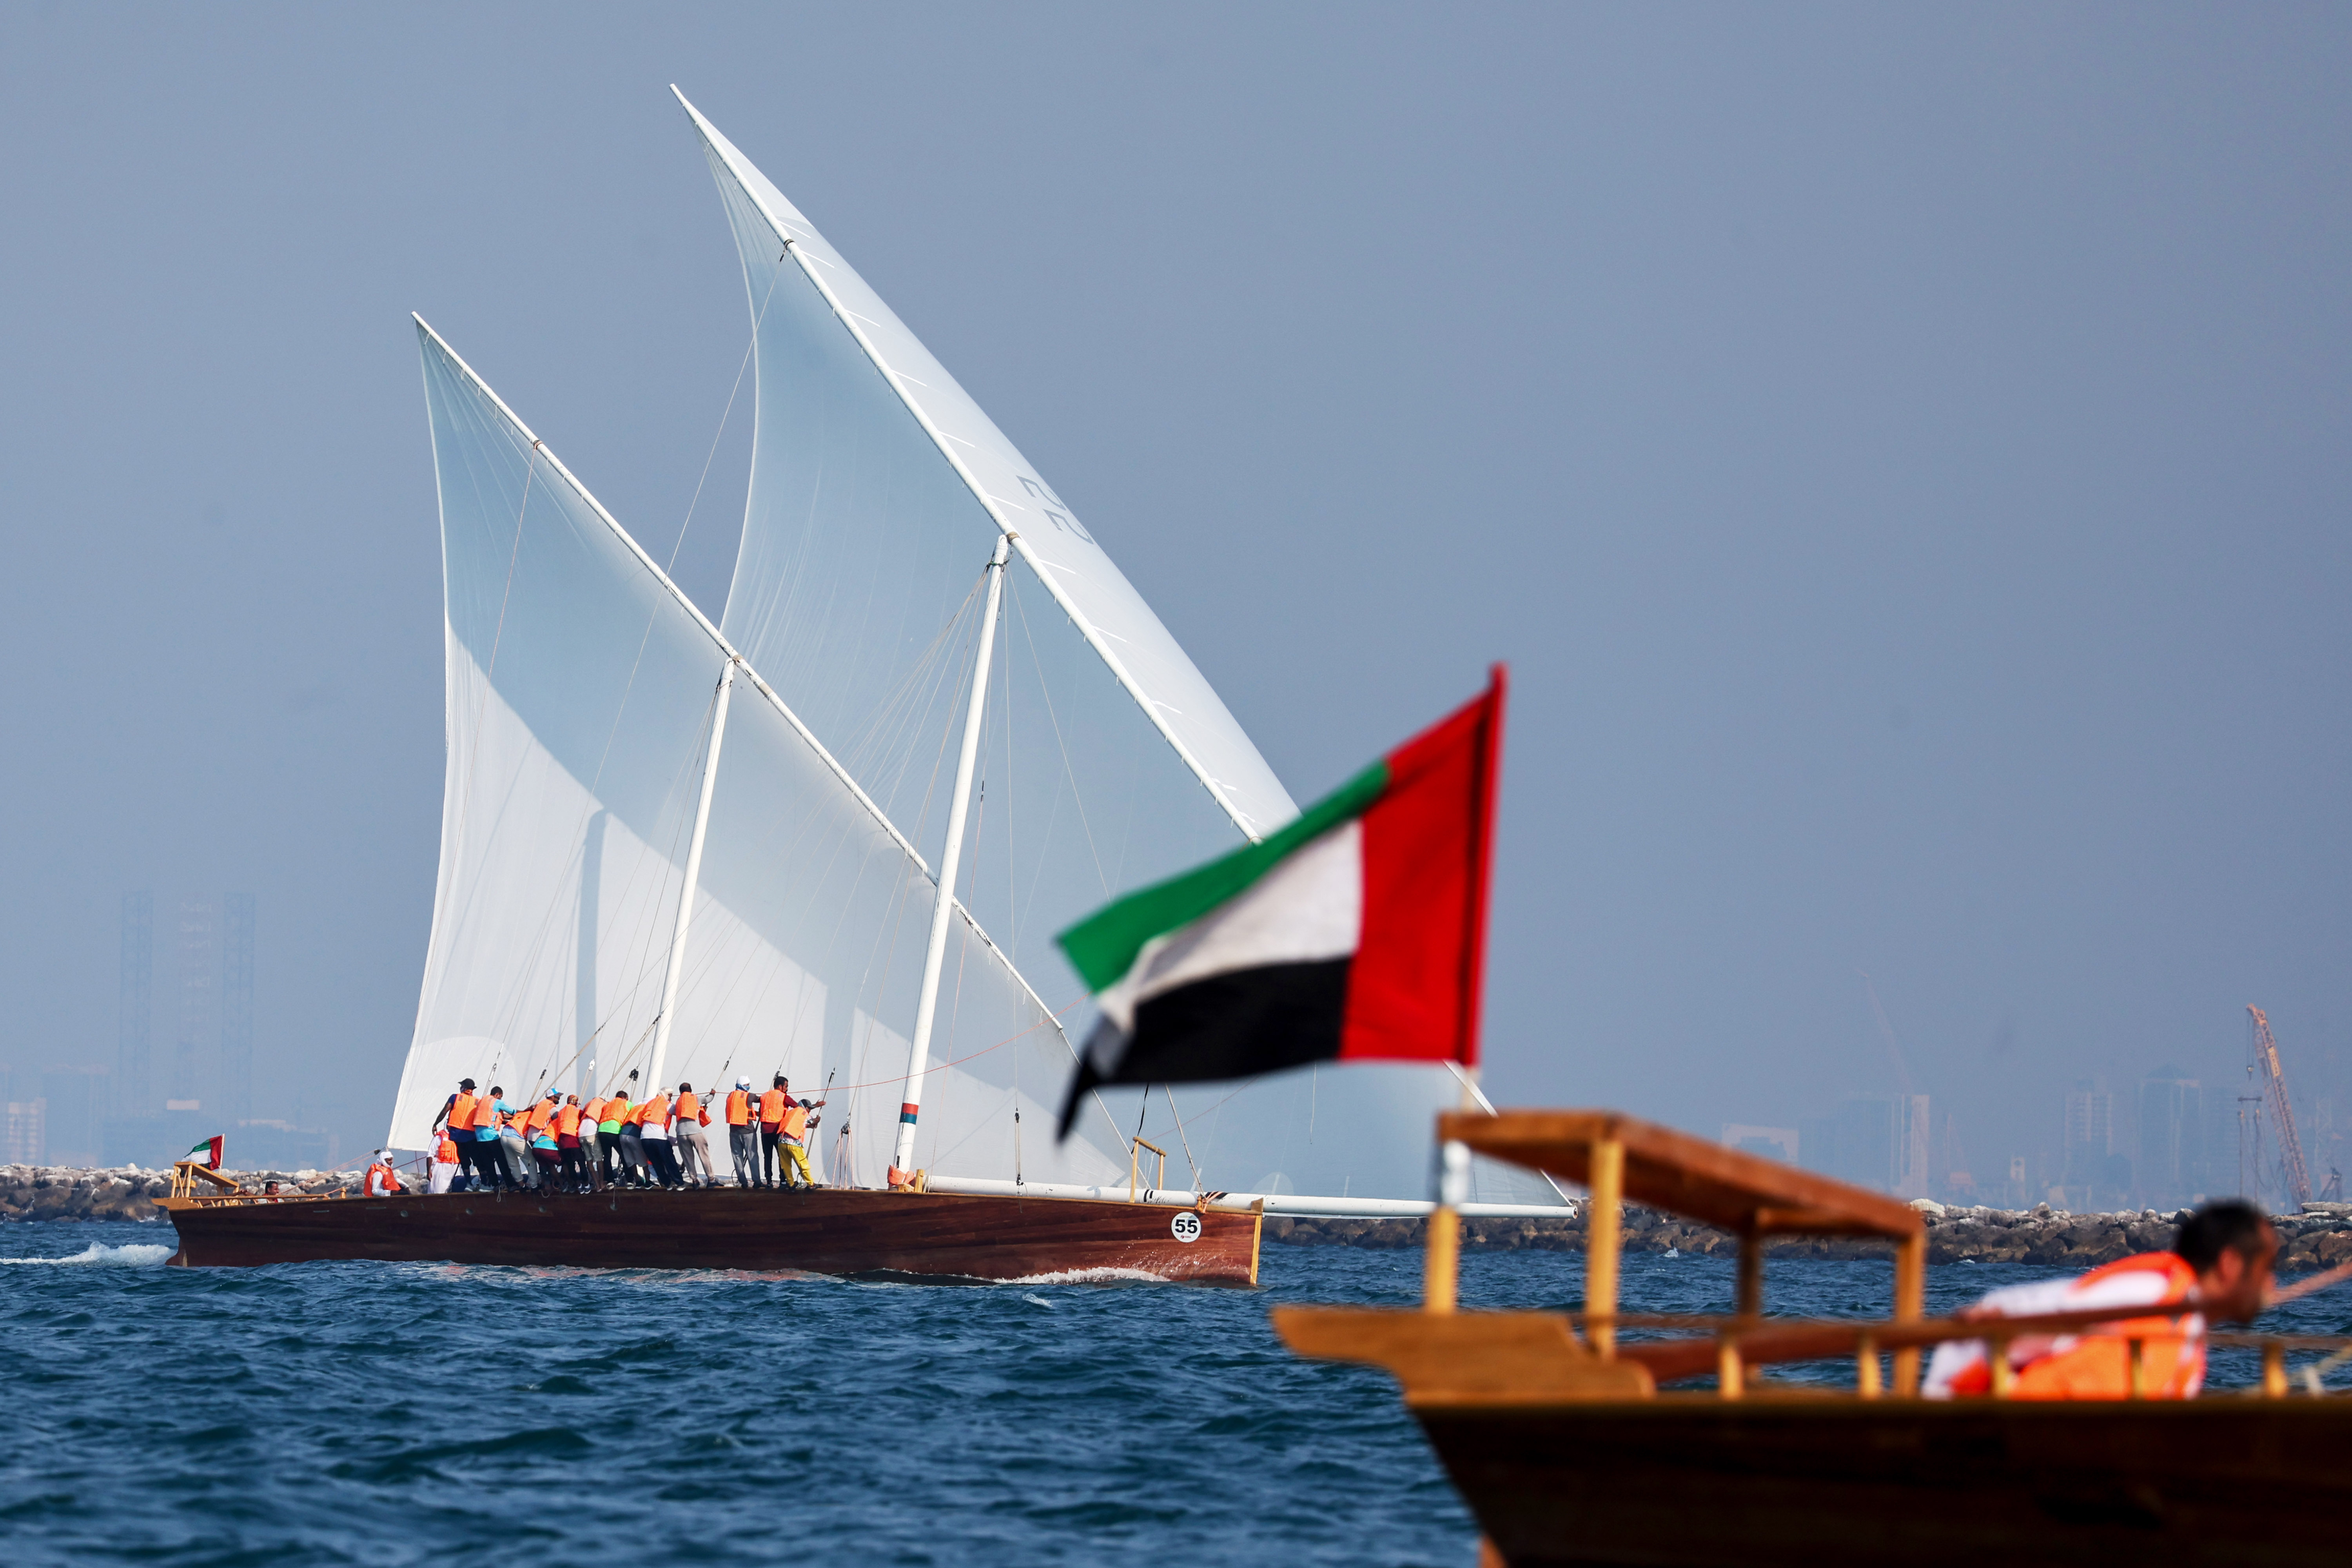 السفن الشراعية 60 قدما تبحر في دبي السبت